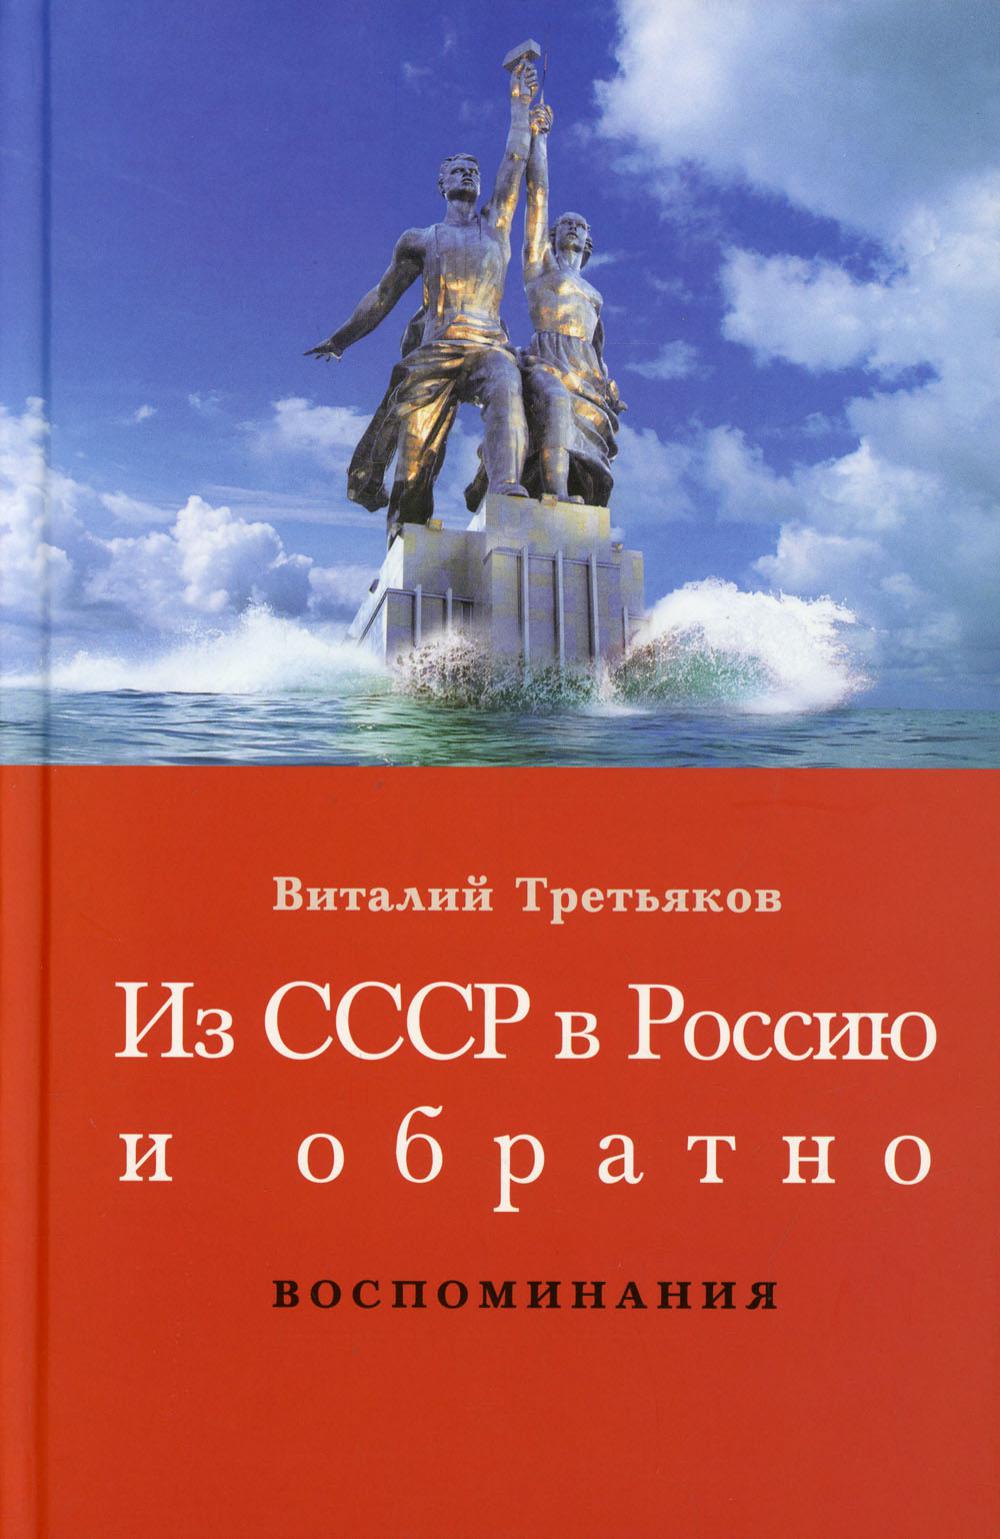 фото Книга детство и отрочество ч. 1: большая коммунистическая (1953-1964) ладомир